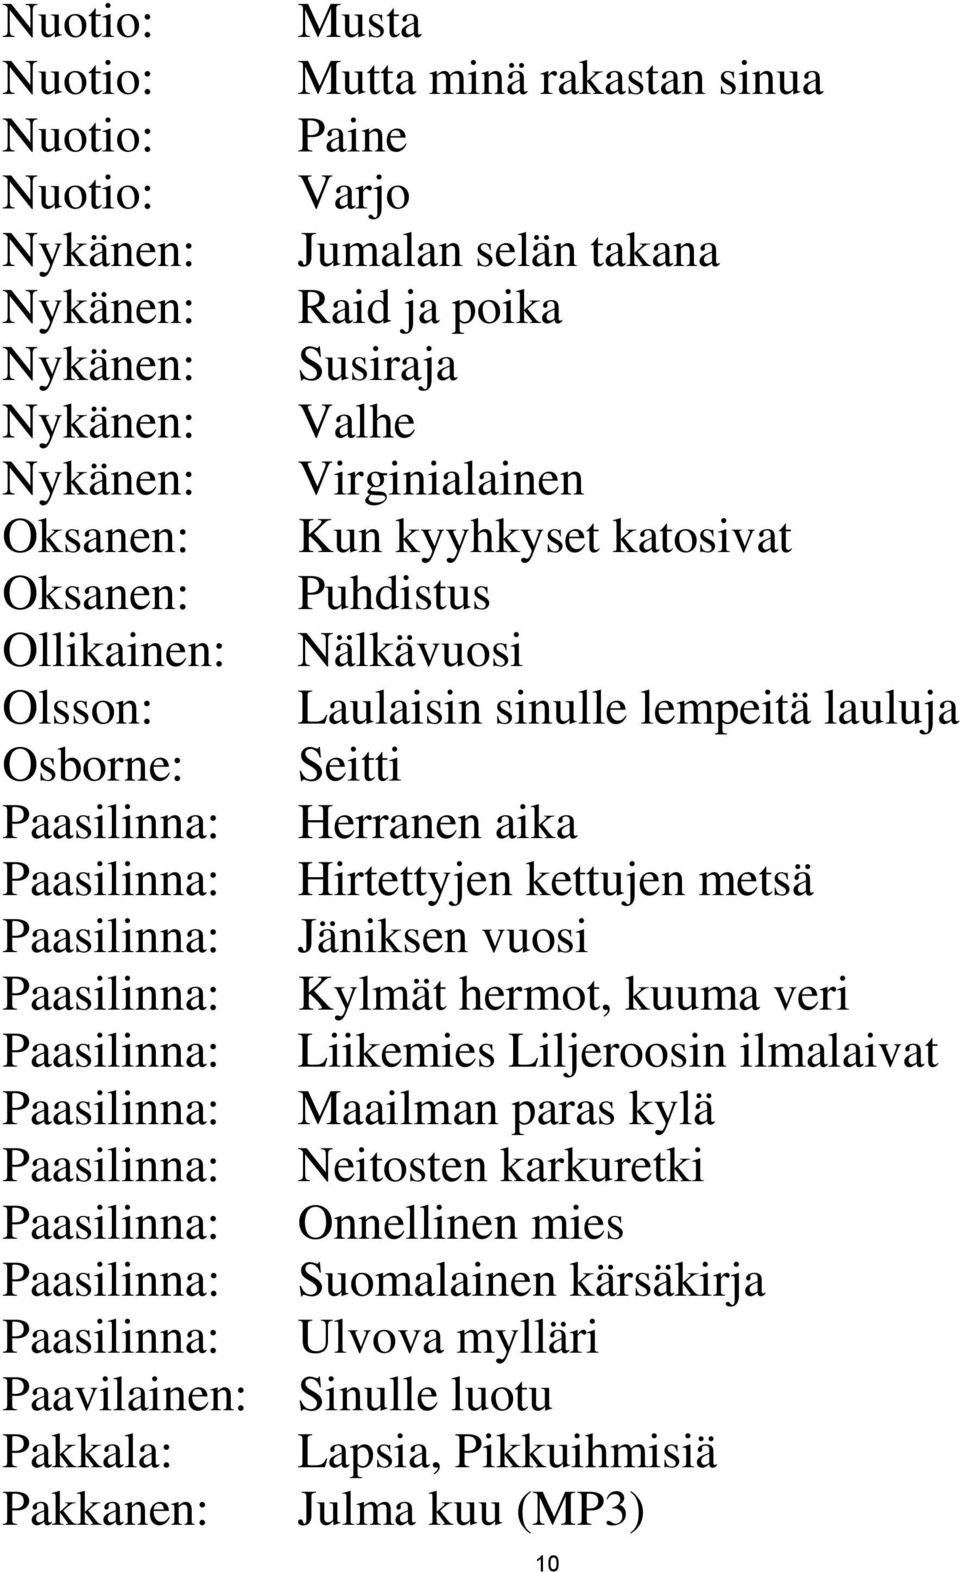 Paasilinna: Hirtettyjen kettujen metsä Paasilinna: Jäniksen vuosi Paasilinna: Kylmät hermot, kuuma veri Paasilinna: Liikemies Liljeroosin ilmalaivat Paasilinna: Maailman paras kylä